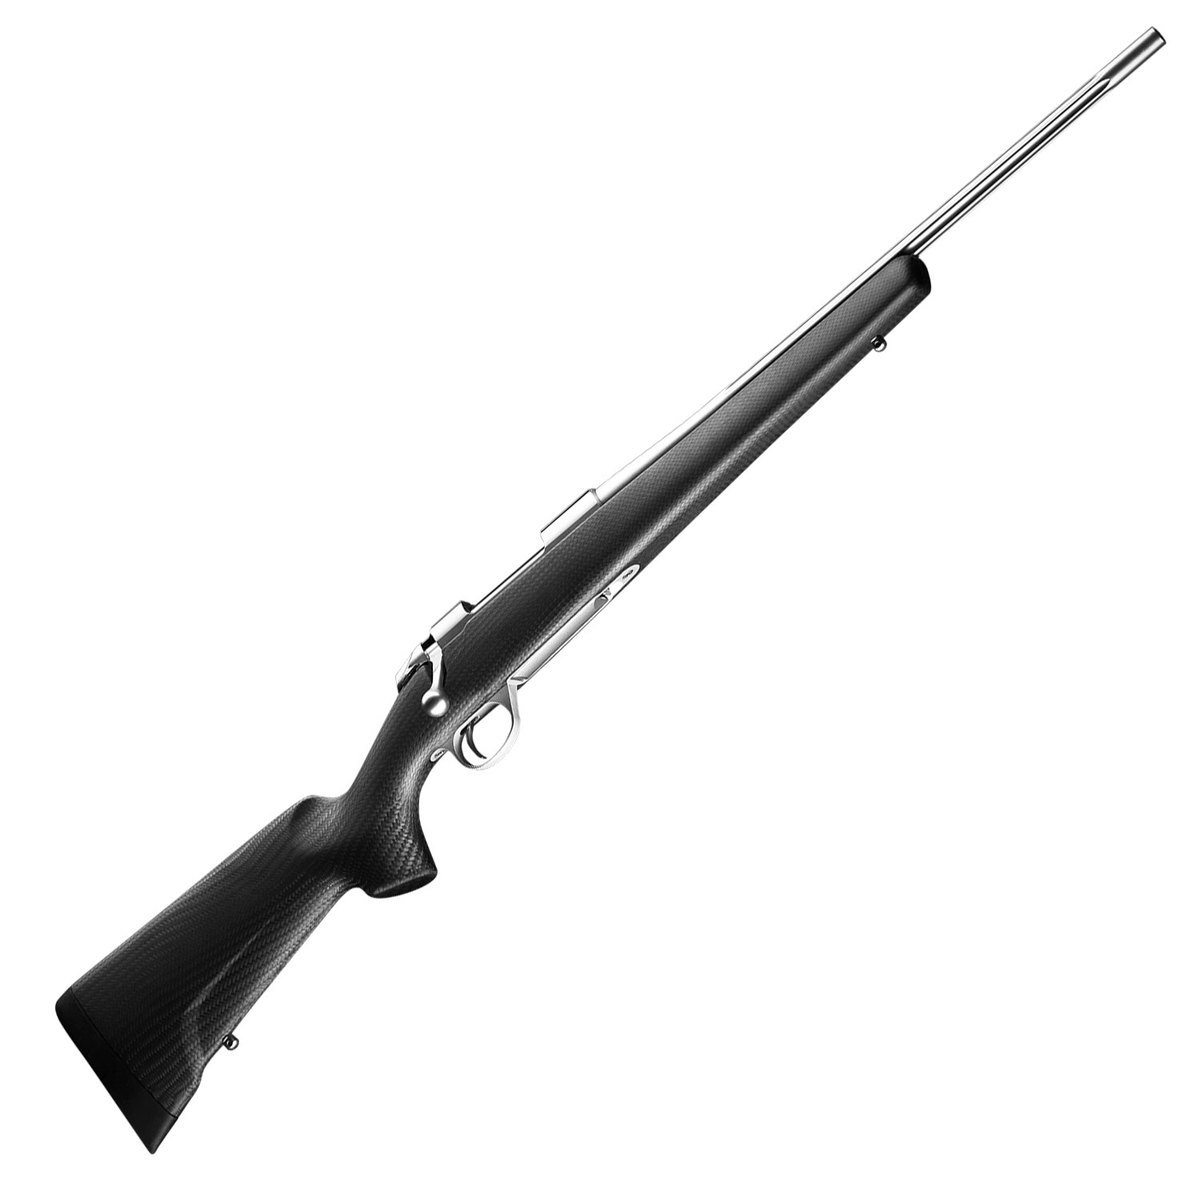 dato Rekvisitter pisk Sako 85 Carbonlight Black/Stainless Bolt Action Rifle - 7mm Remington  Magnum - 24.5in - Matte Black | Sportsman's Warehouse